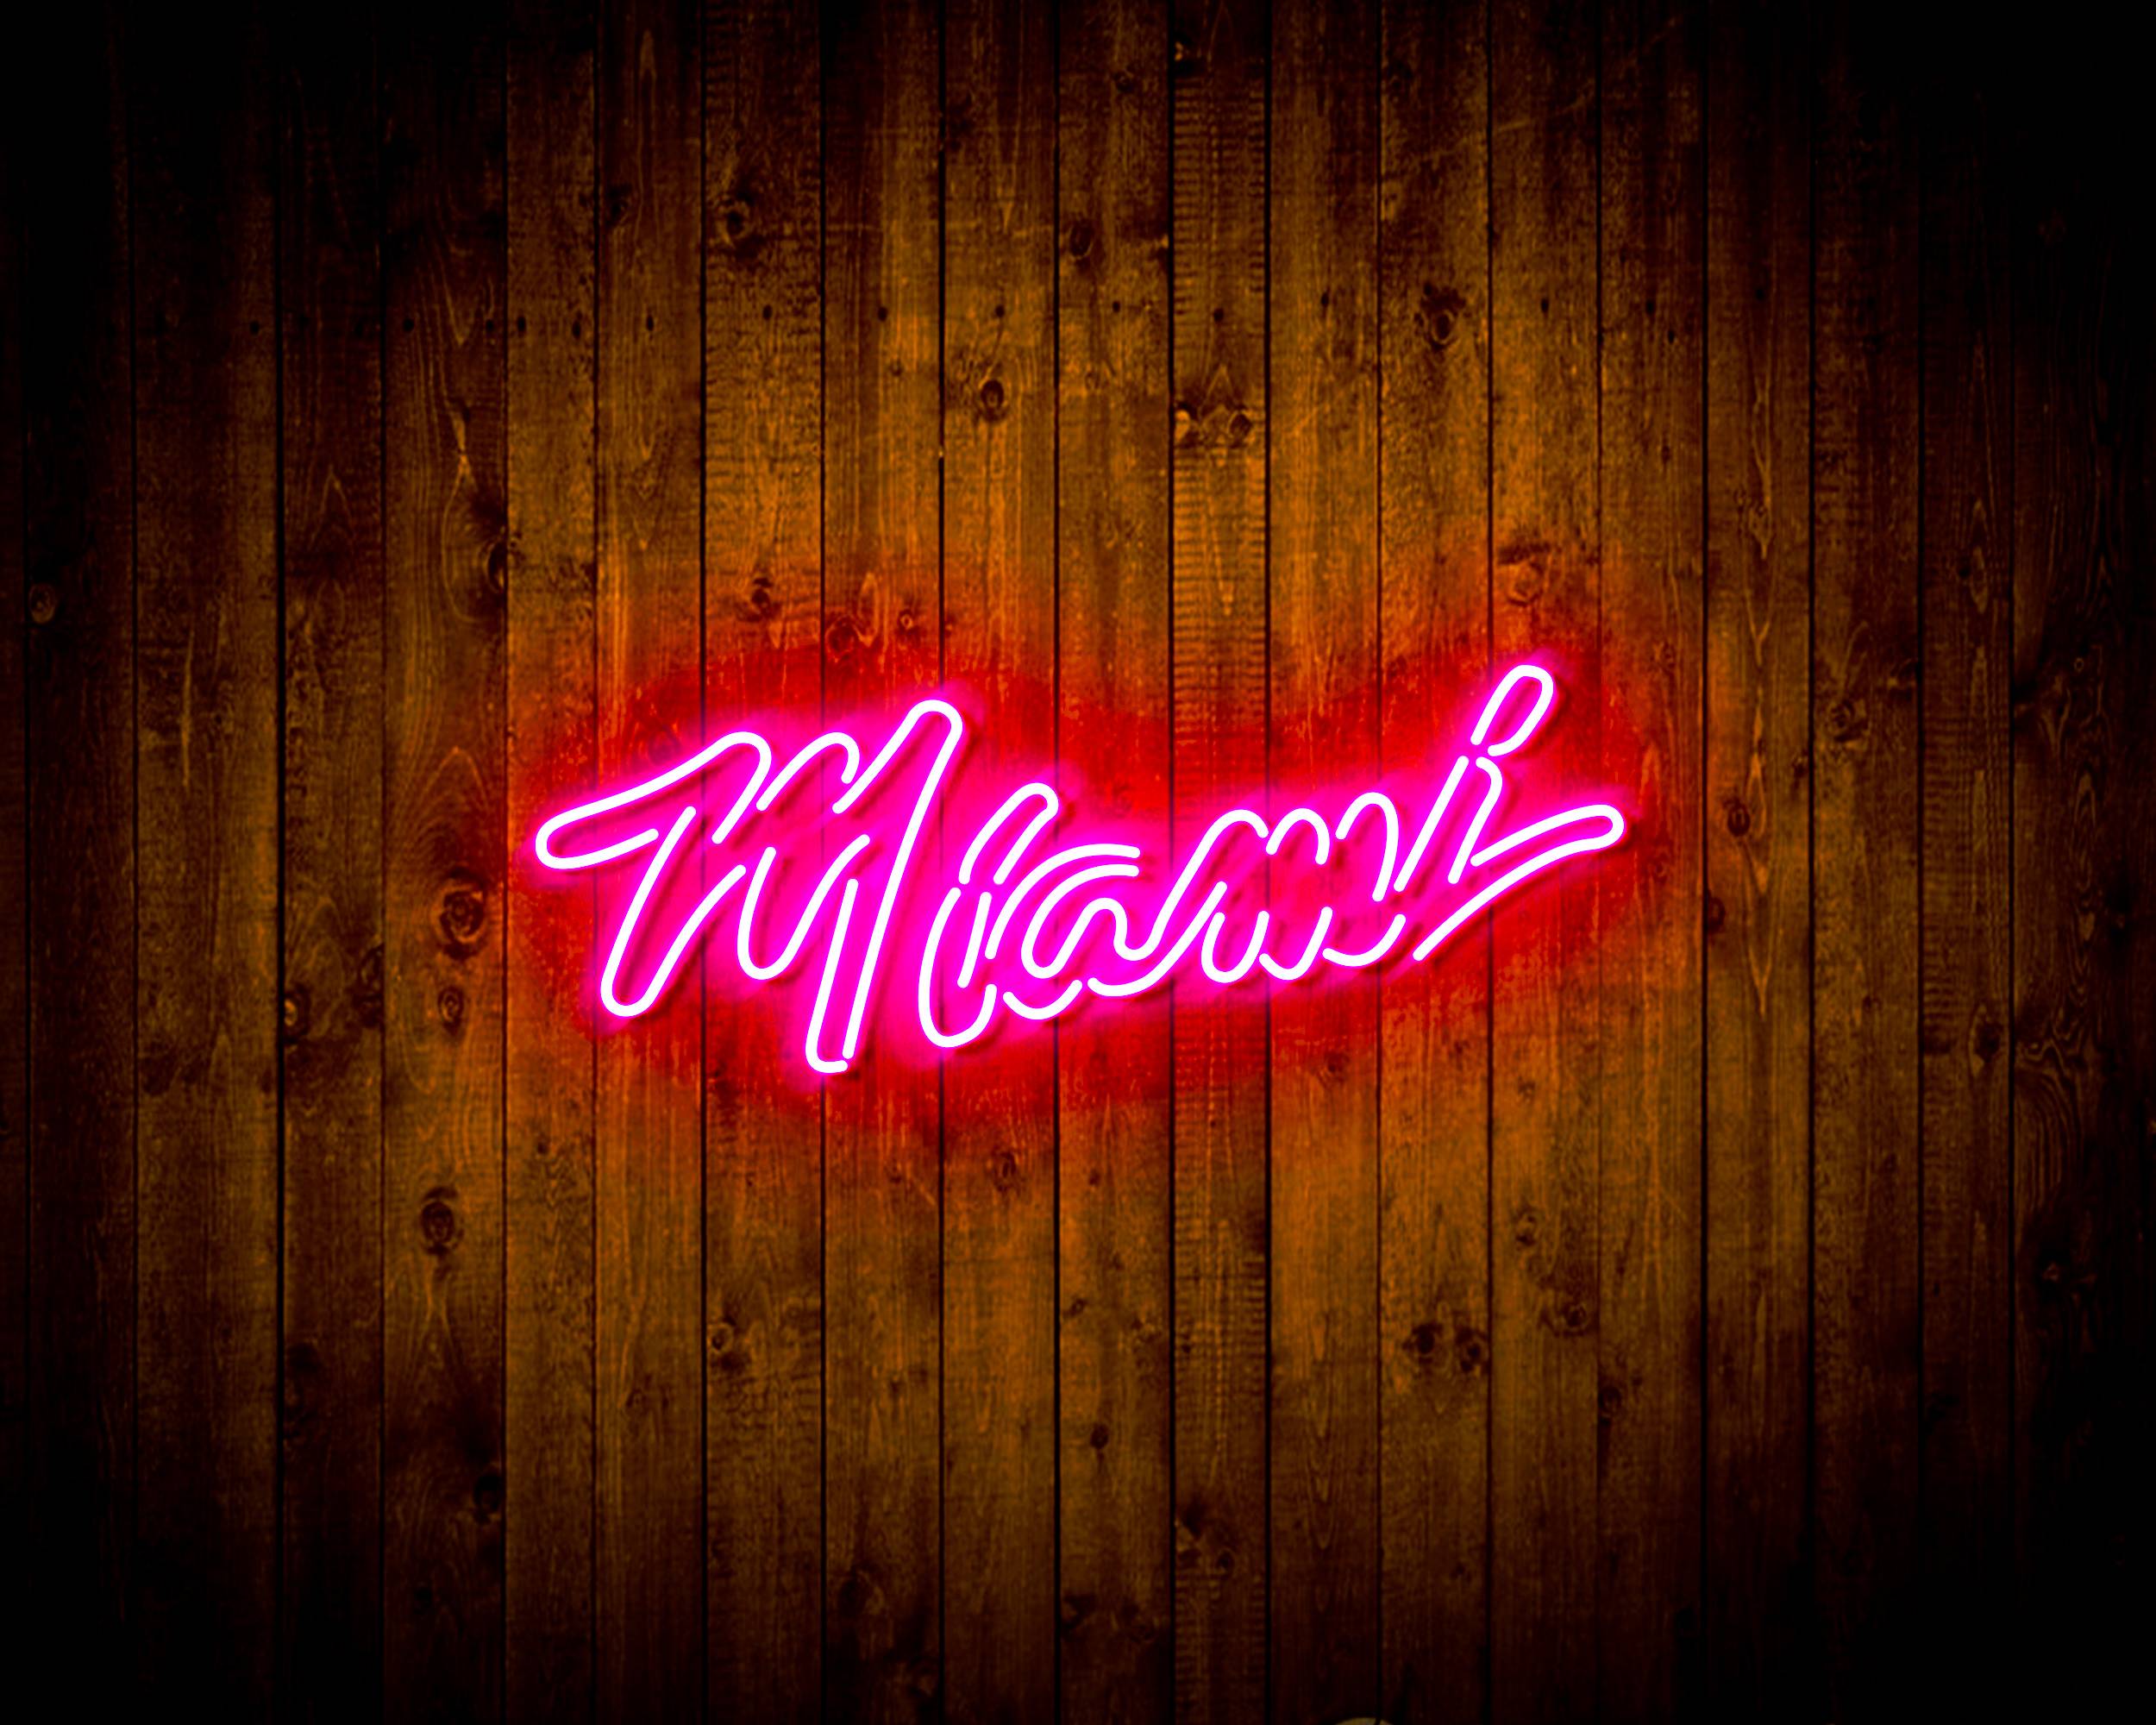 Miami Vice Neon Sign